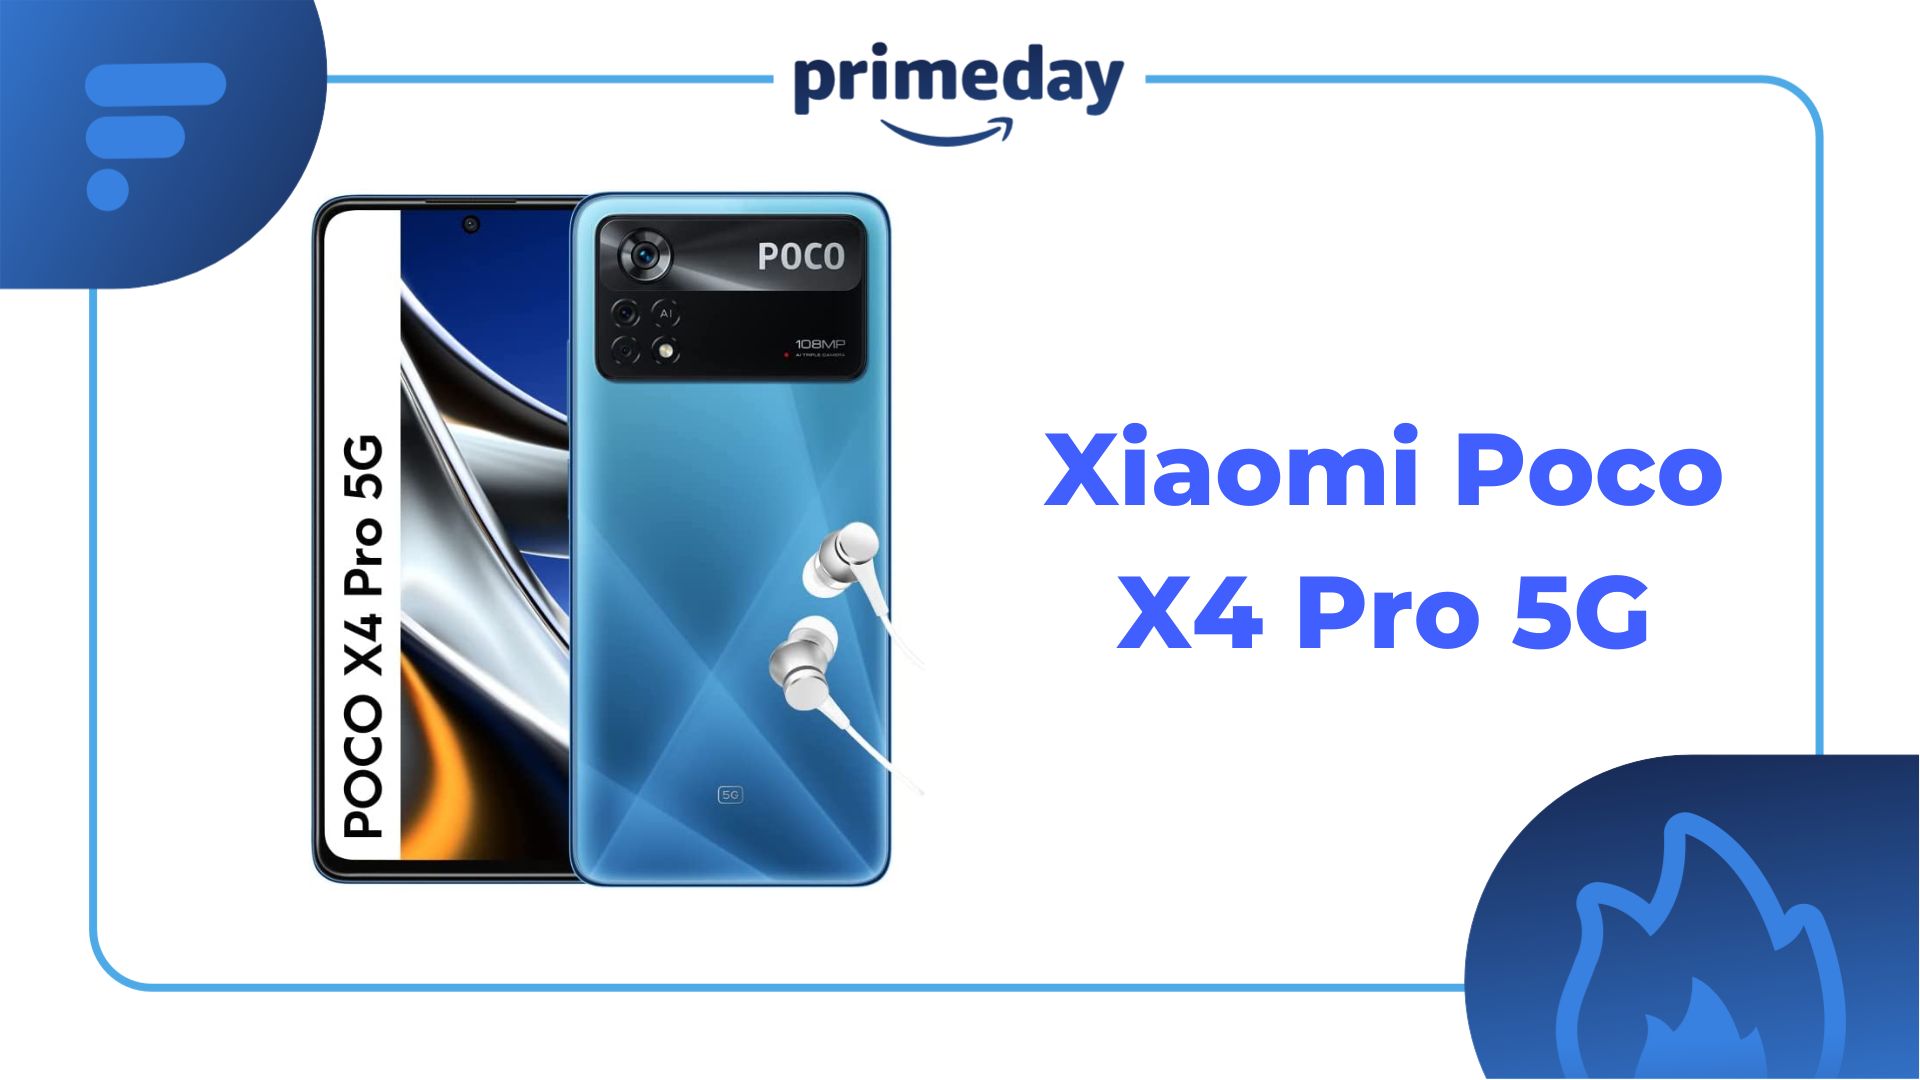 Ce petit écran Samsung est de retour à son prix du Prime Day !